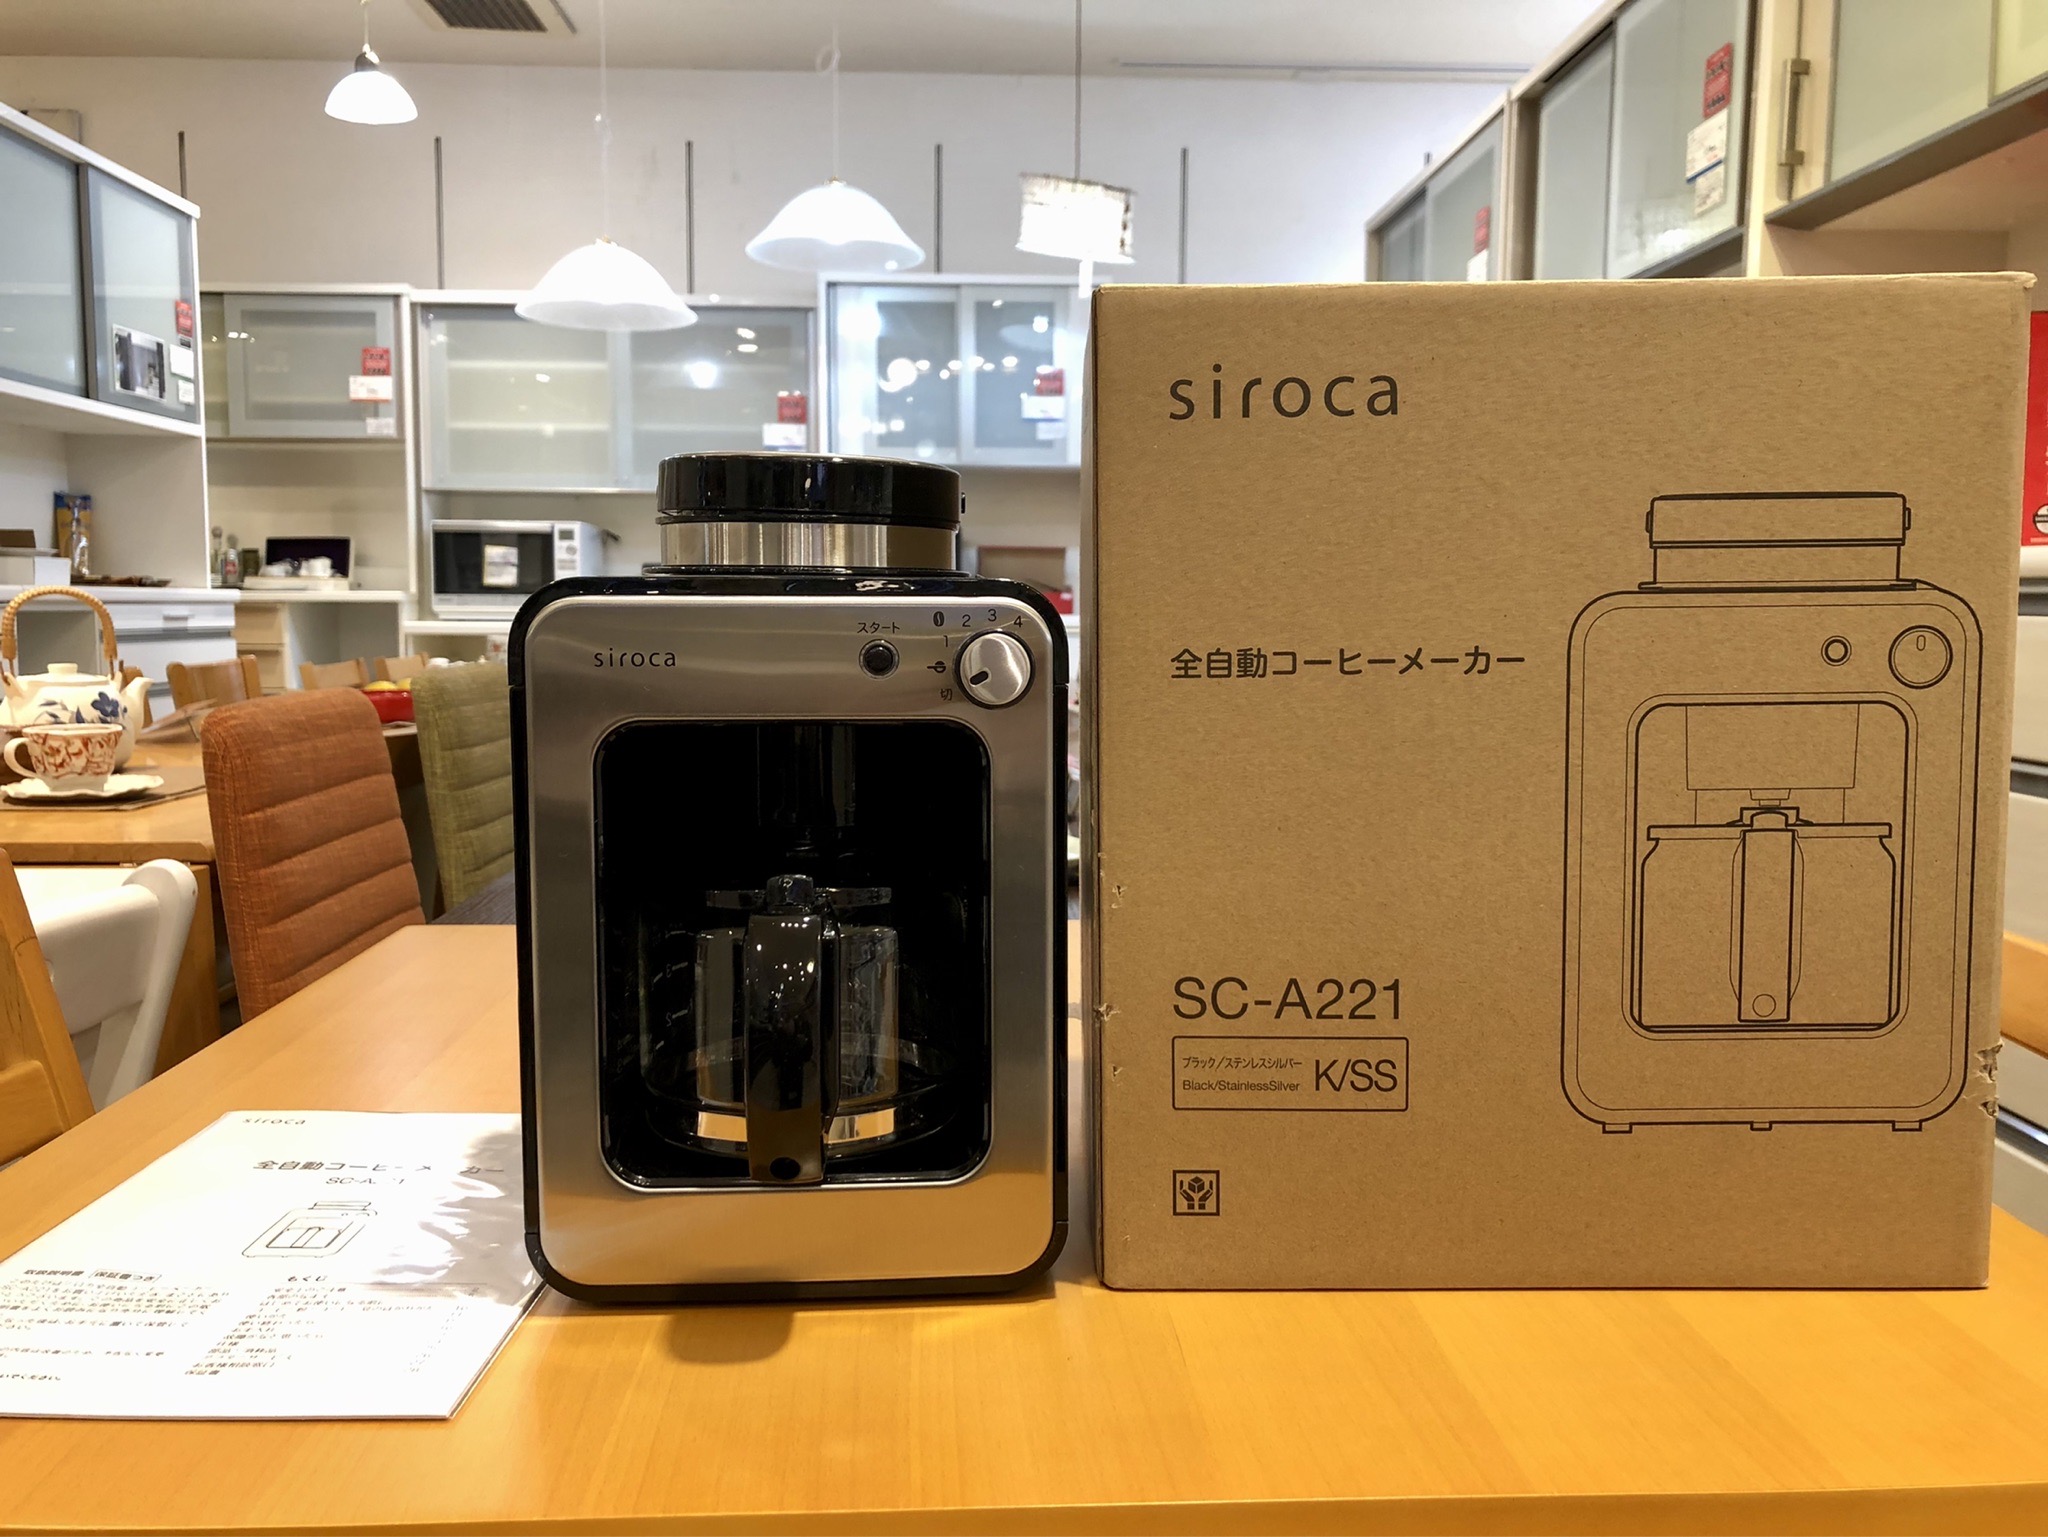 シロカ 2021年製 全自動コーヒーメーカー SC-A221 ミル内蔵 買取しました。 | 愛知と岐阜のリサイクルショップ 再良市場